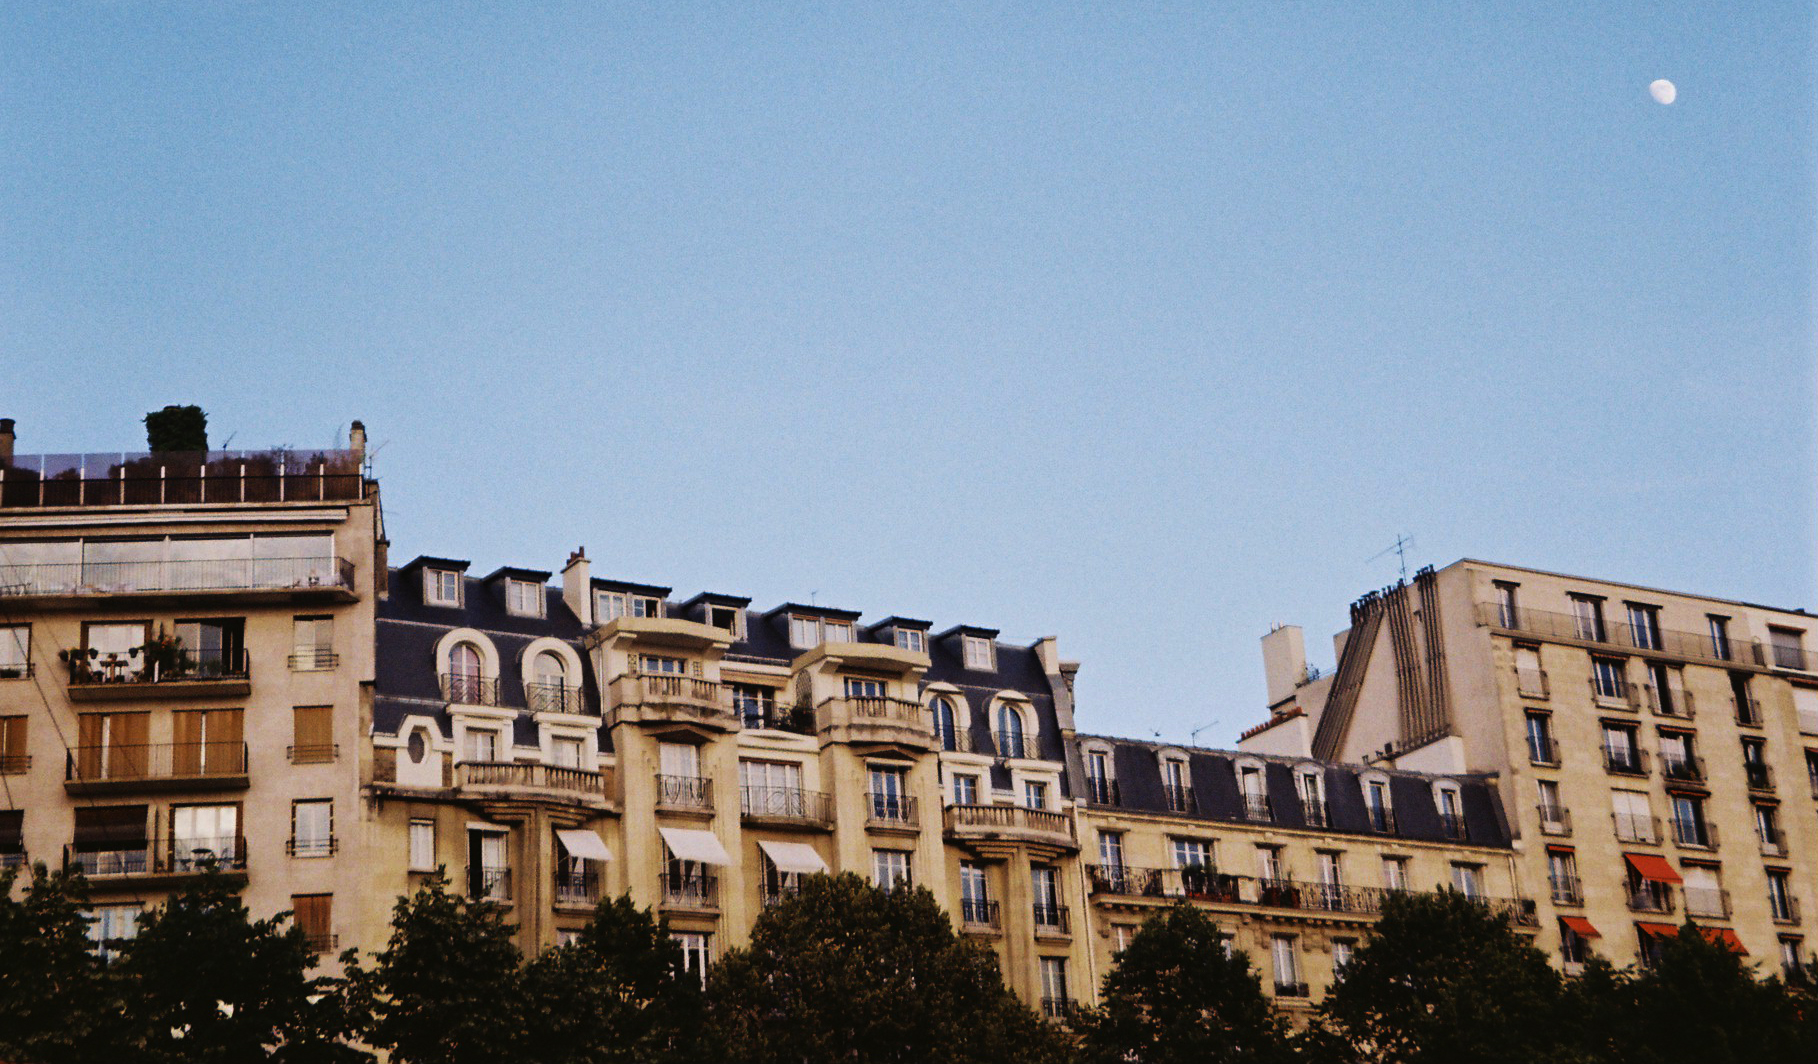 Immeubles parisiens sous la lune